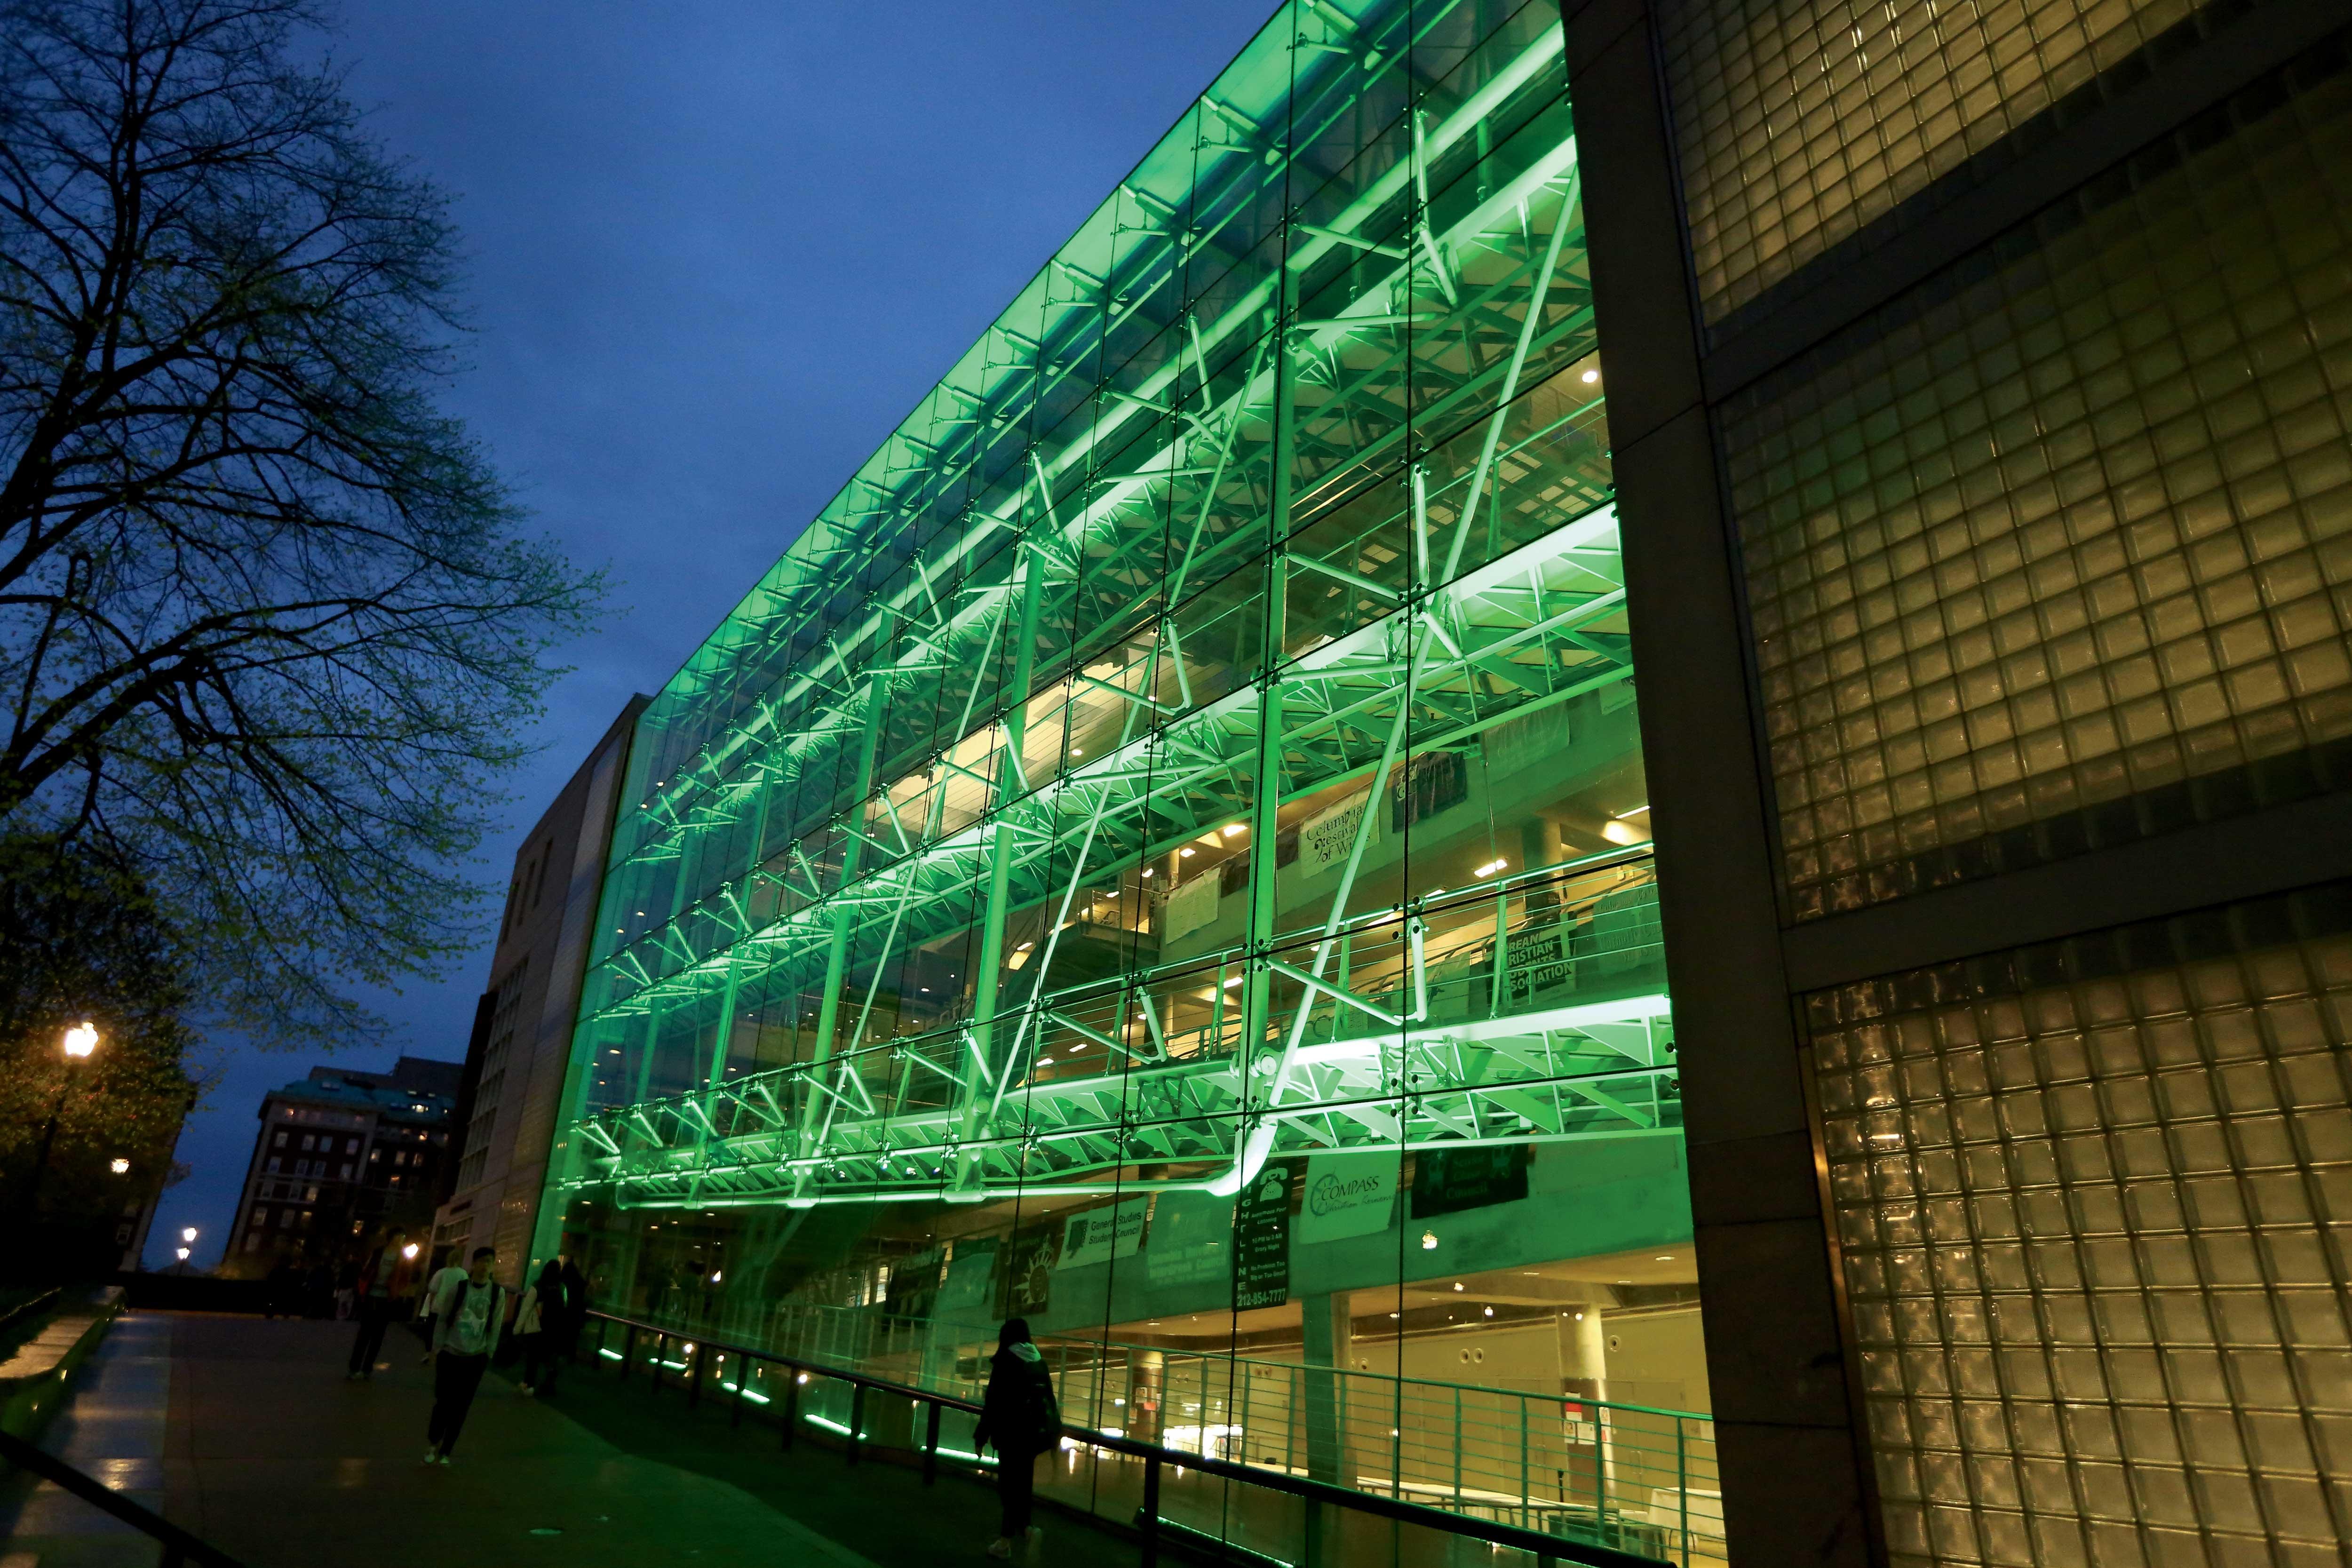 Lerner Hall lit up green